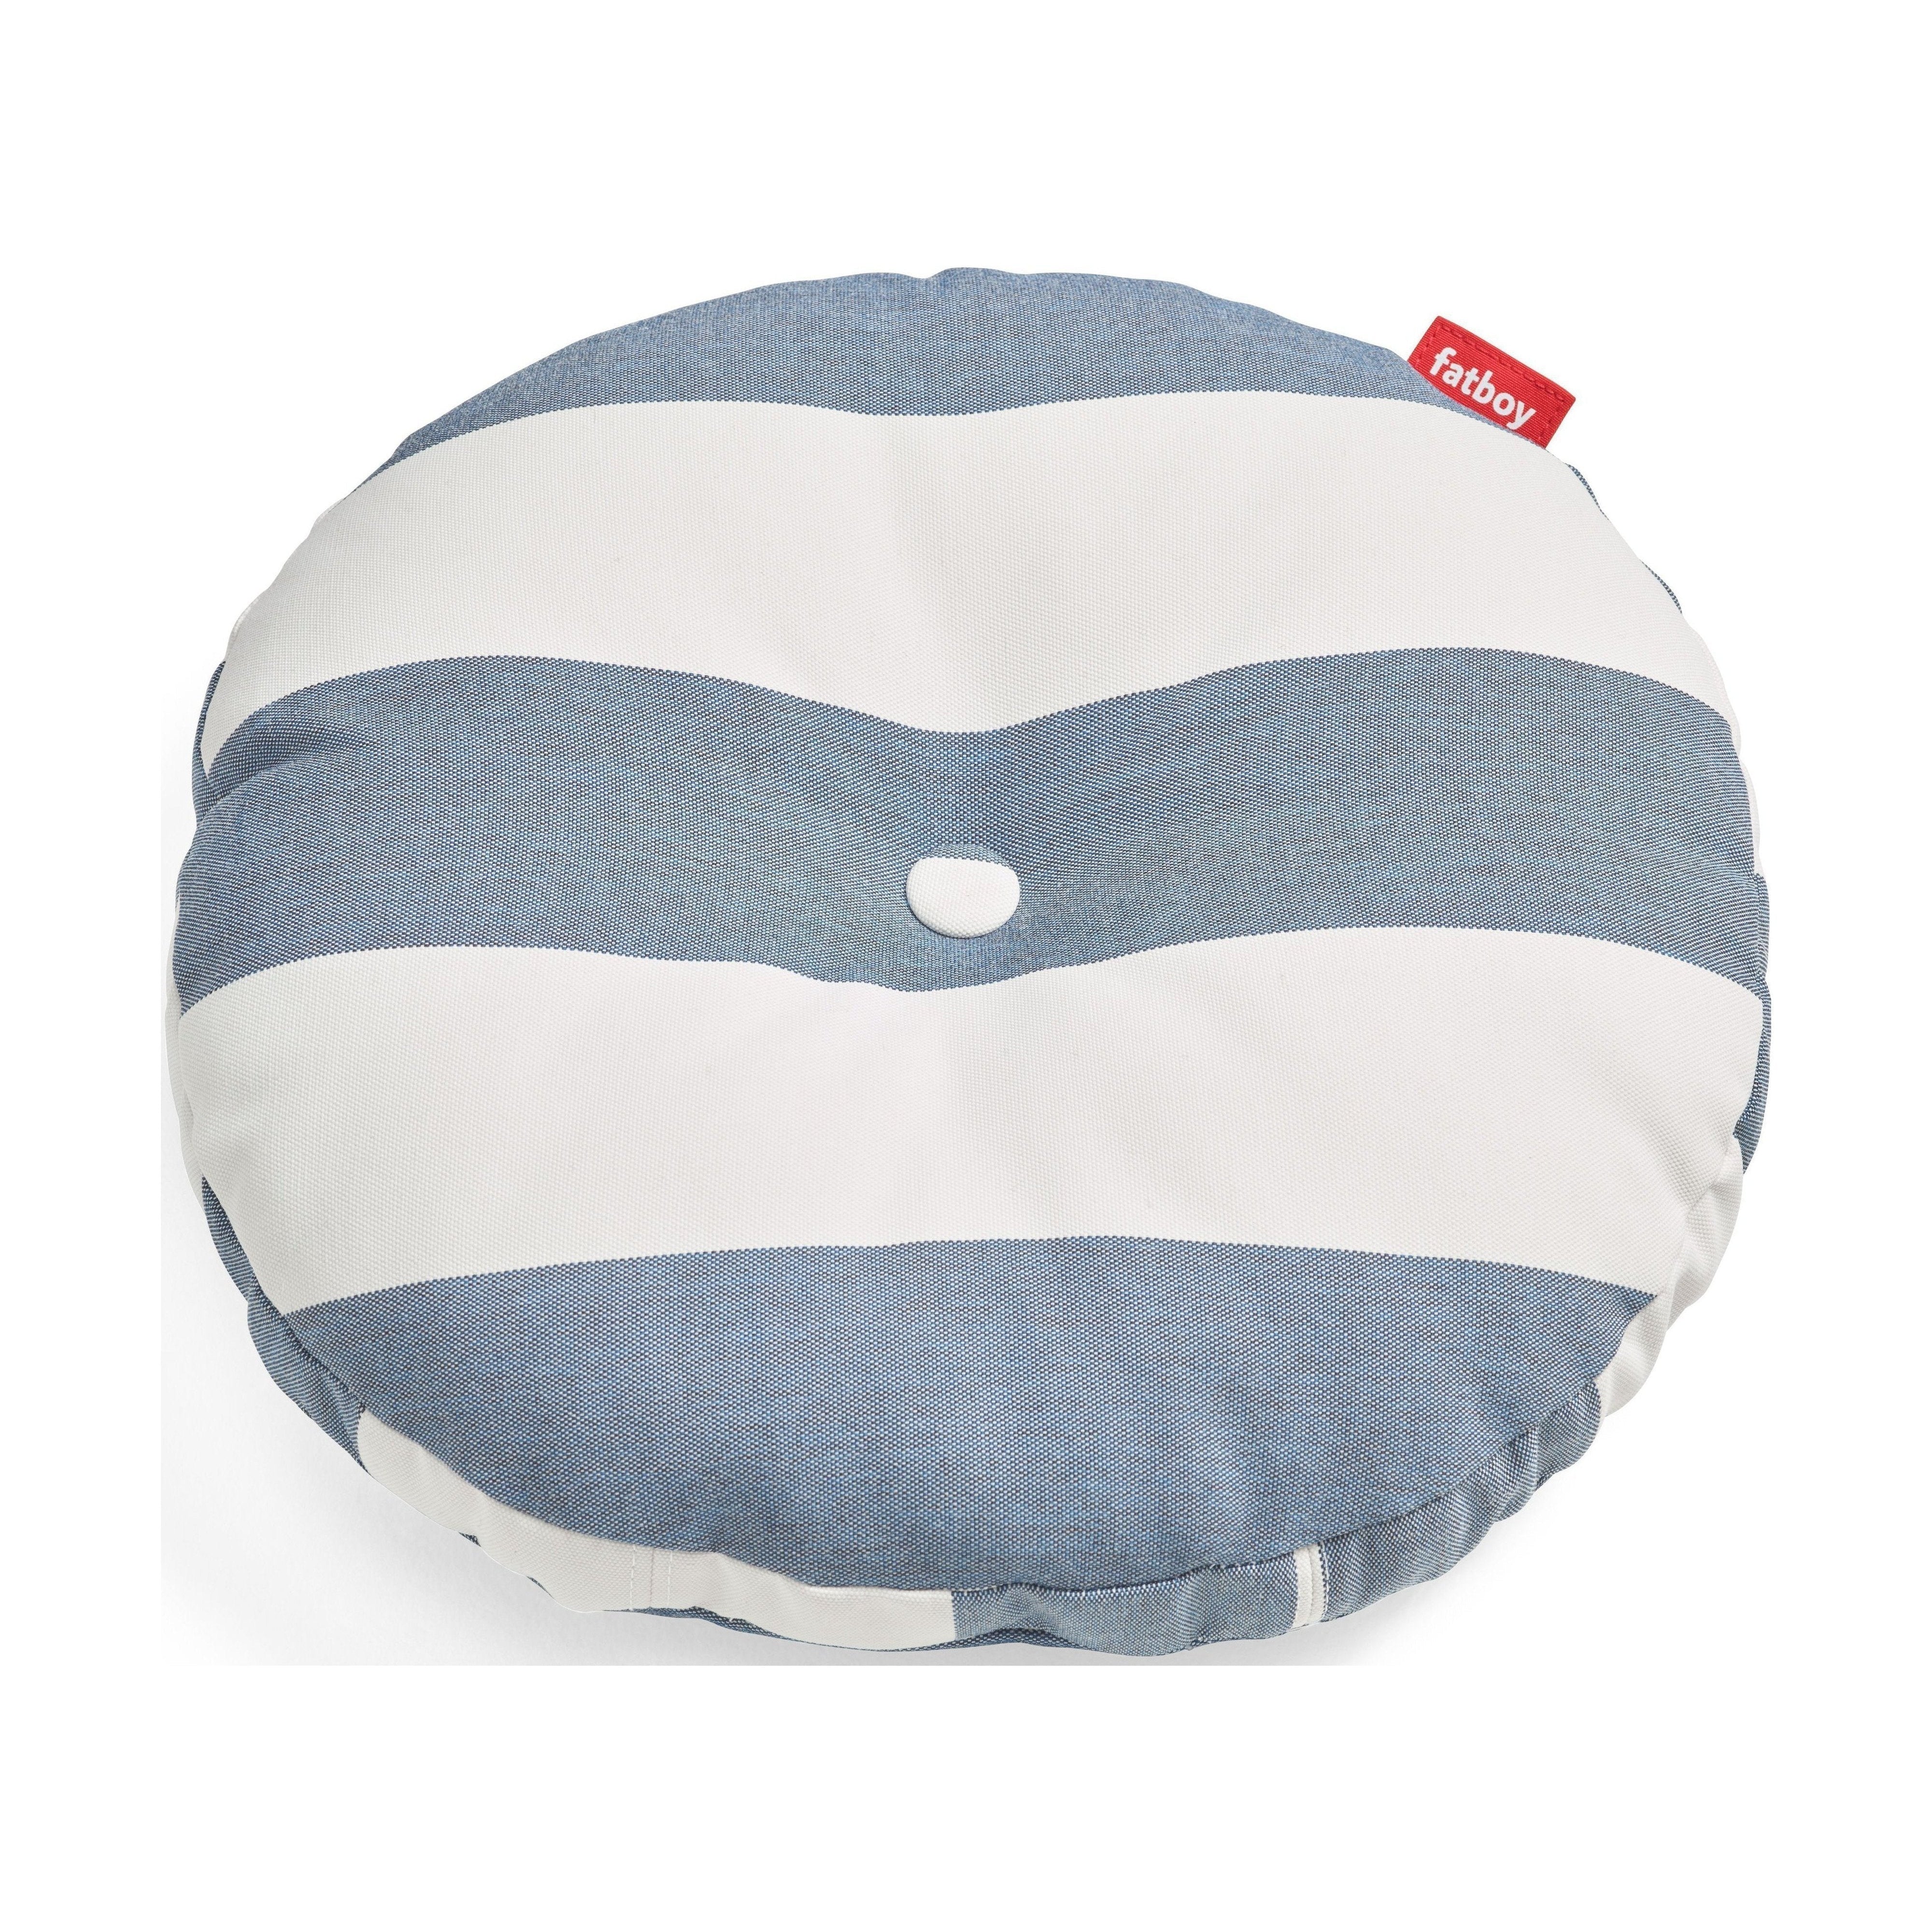 Fatboy Circle kussen Outdoor Round Garden Cushion, Stripe Ocean Blue